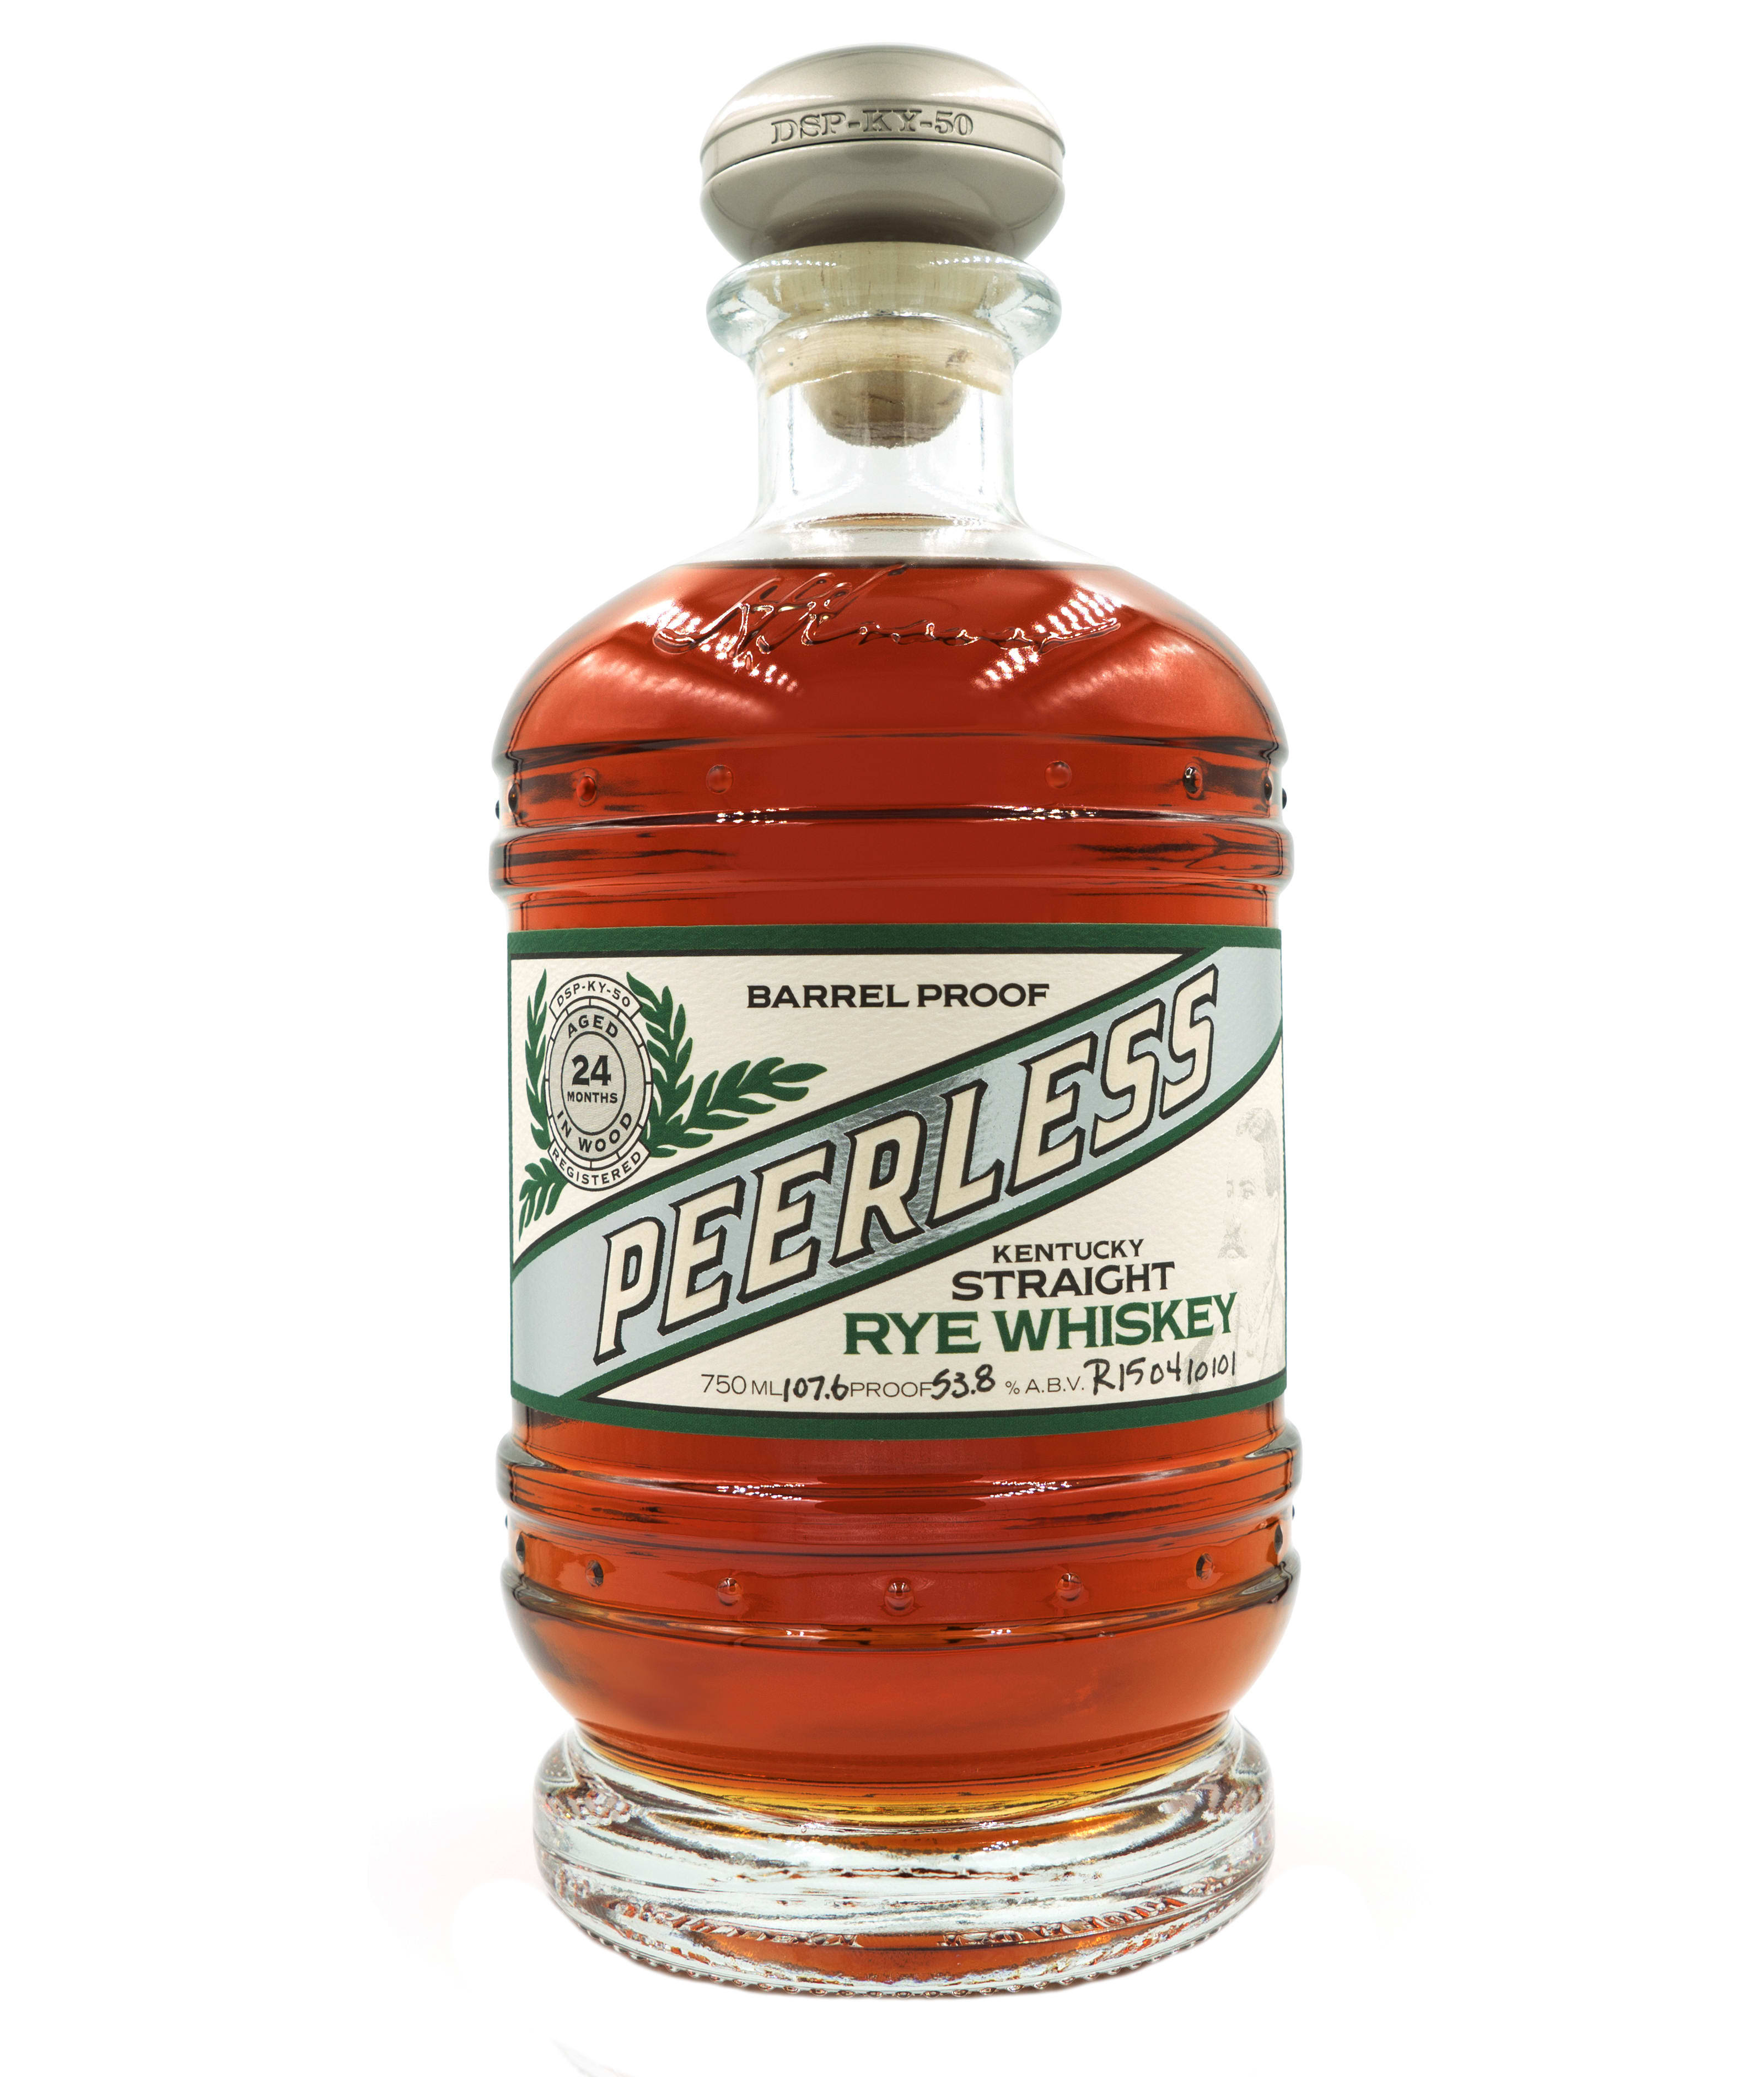 Peerless - Kentucky Straight Rye Whiskey (750ml)